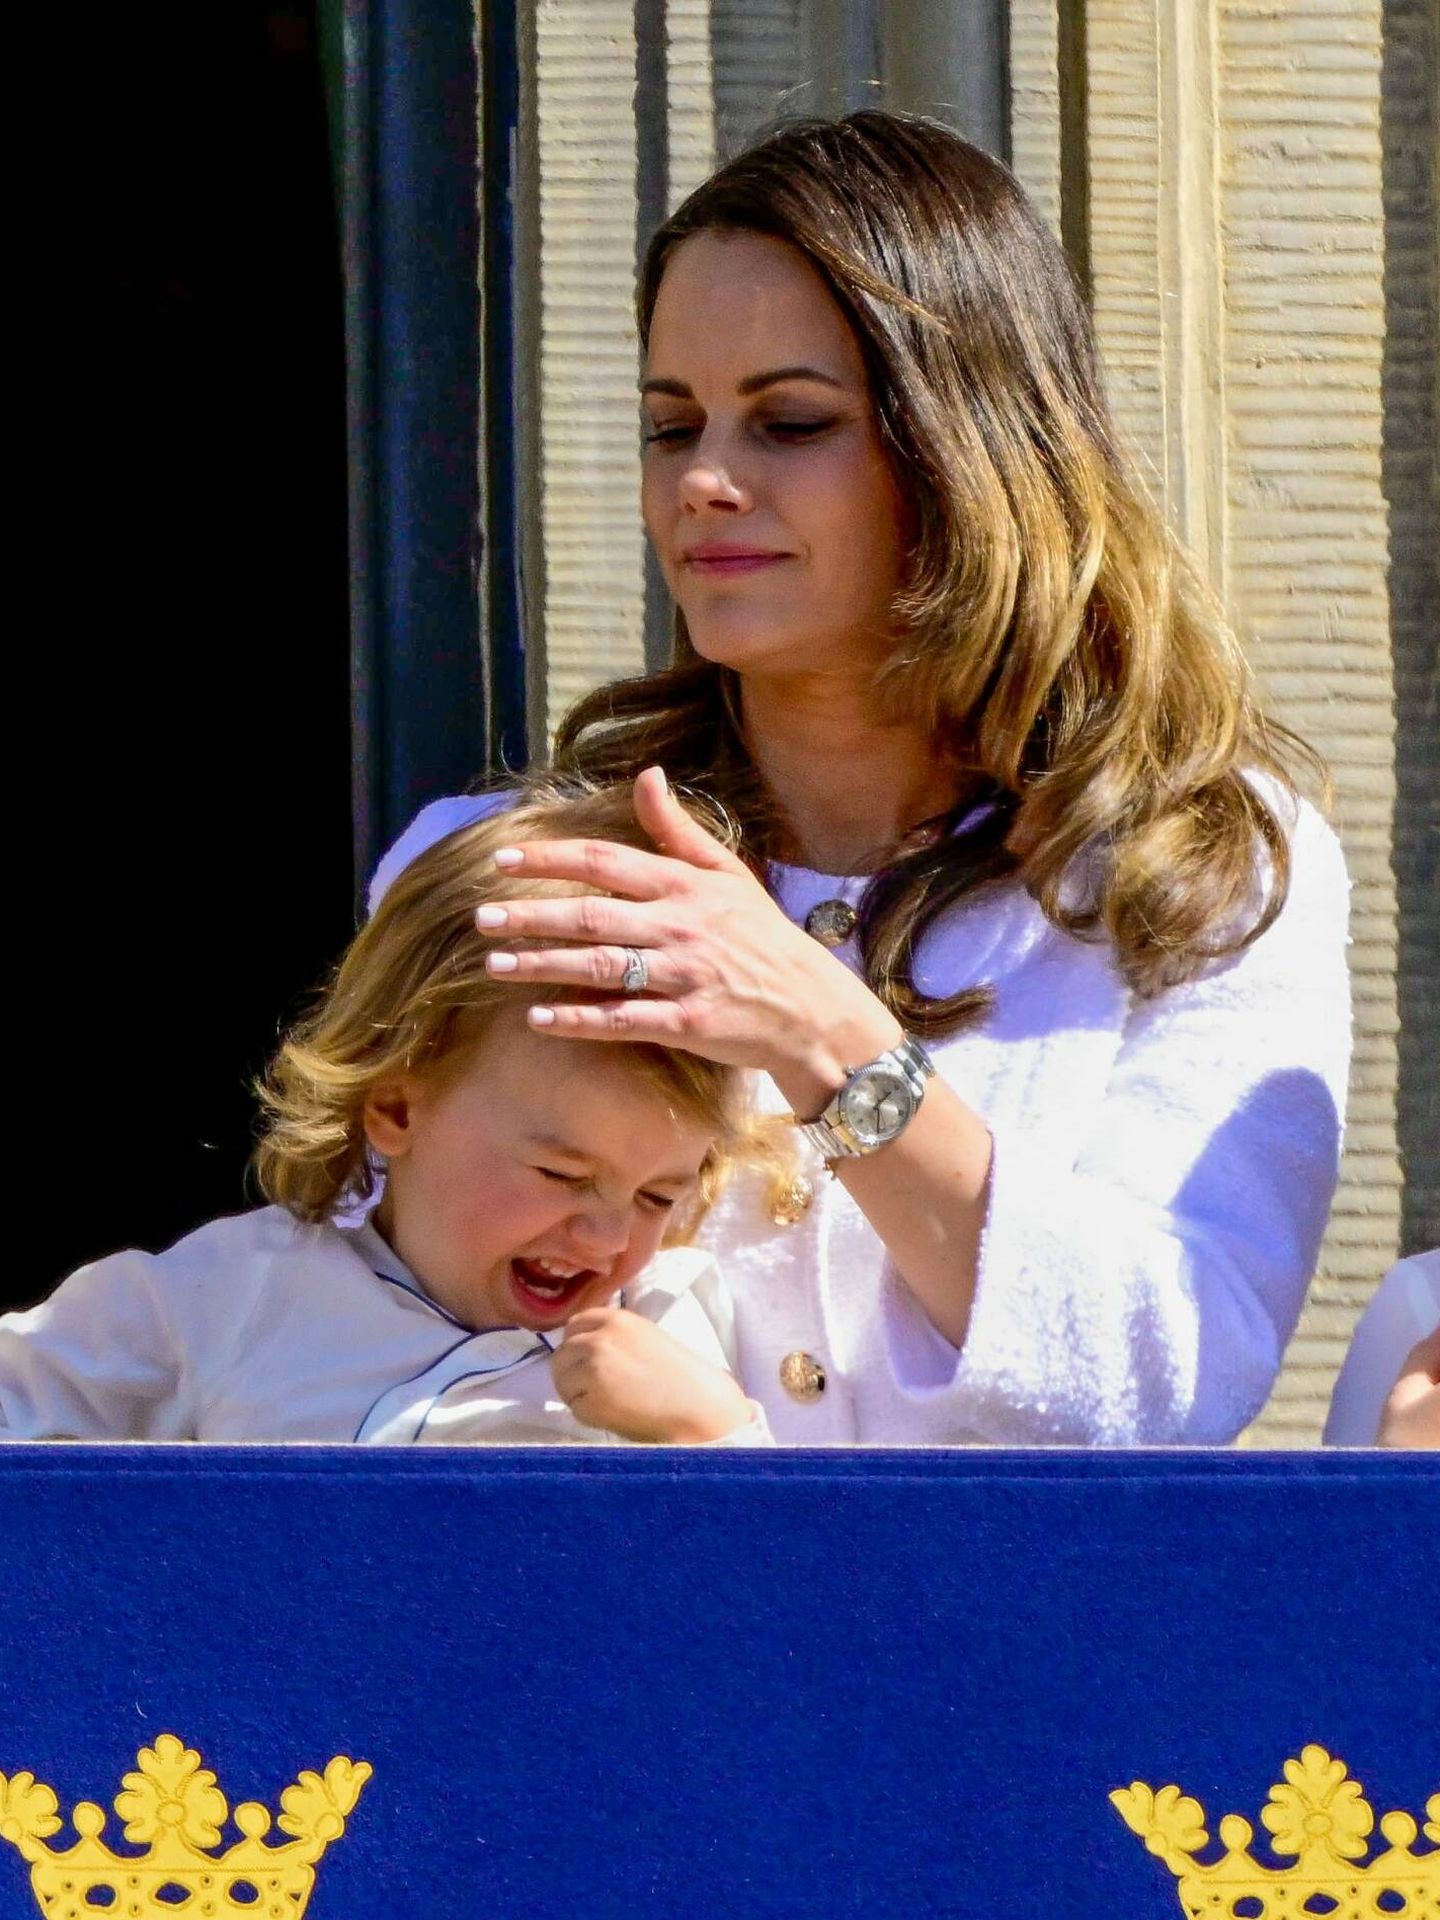 La princesa Sofia cuidando de su hijo Julian. (CordonPress)